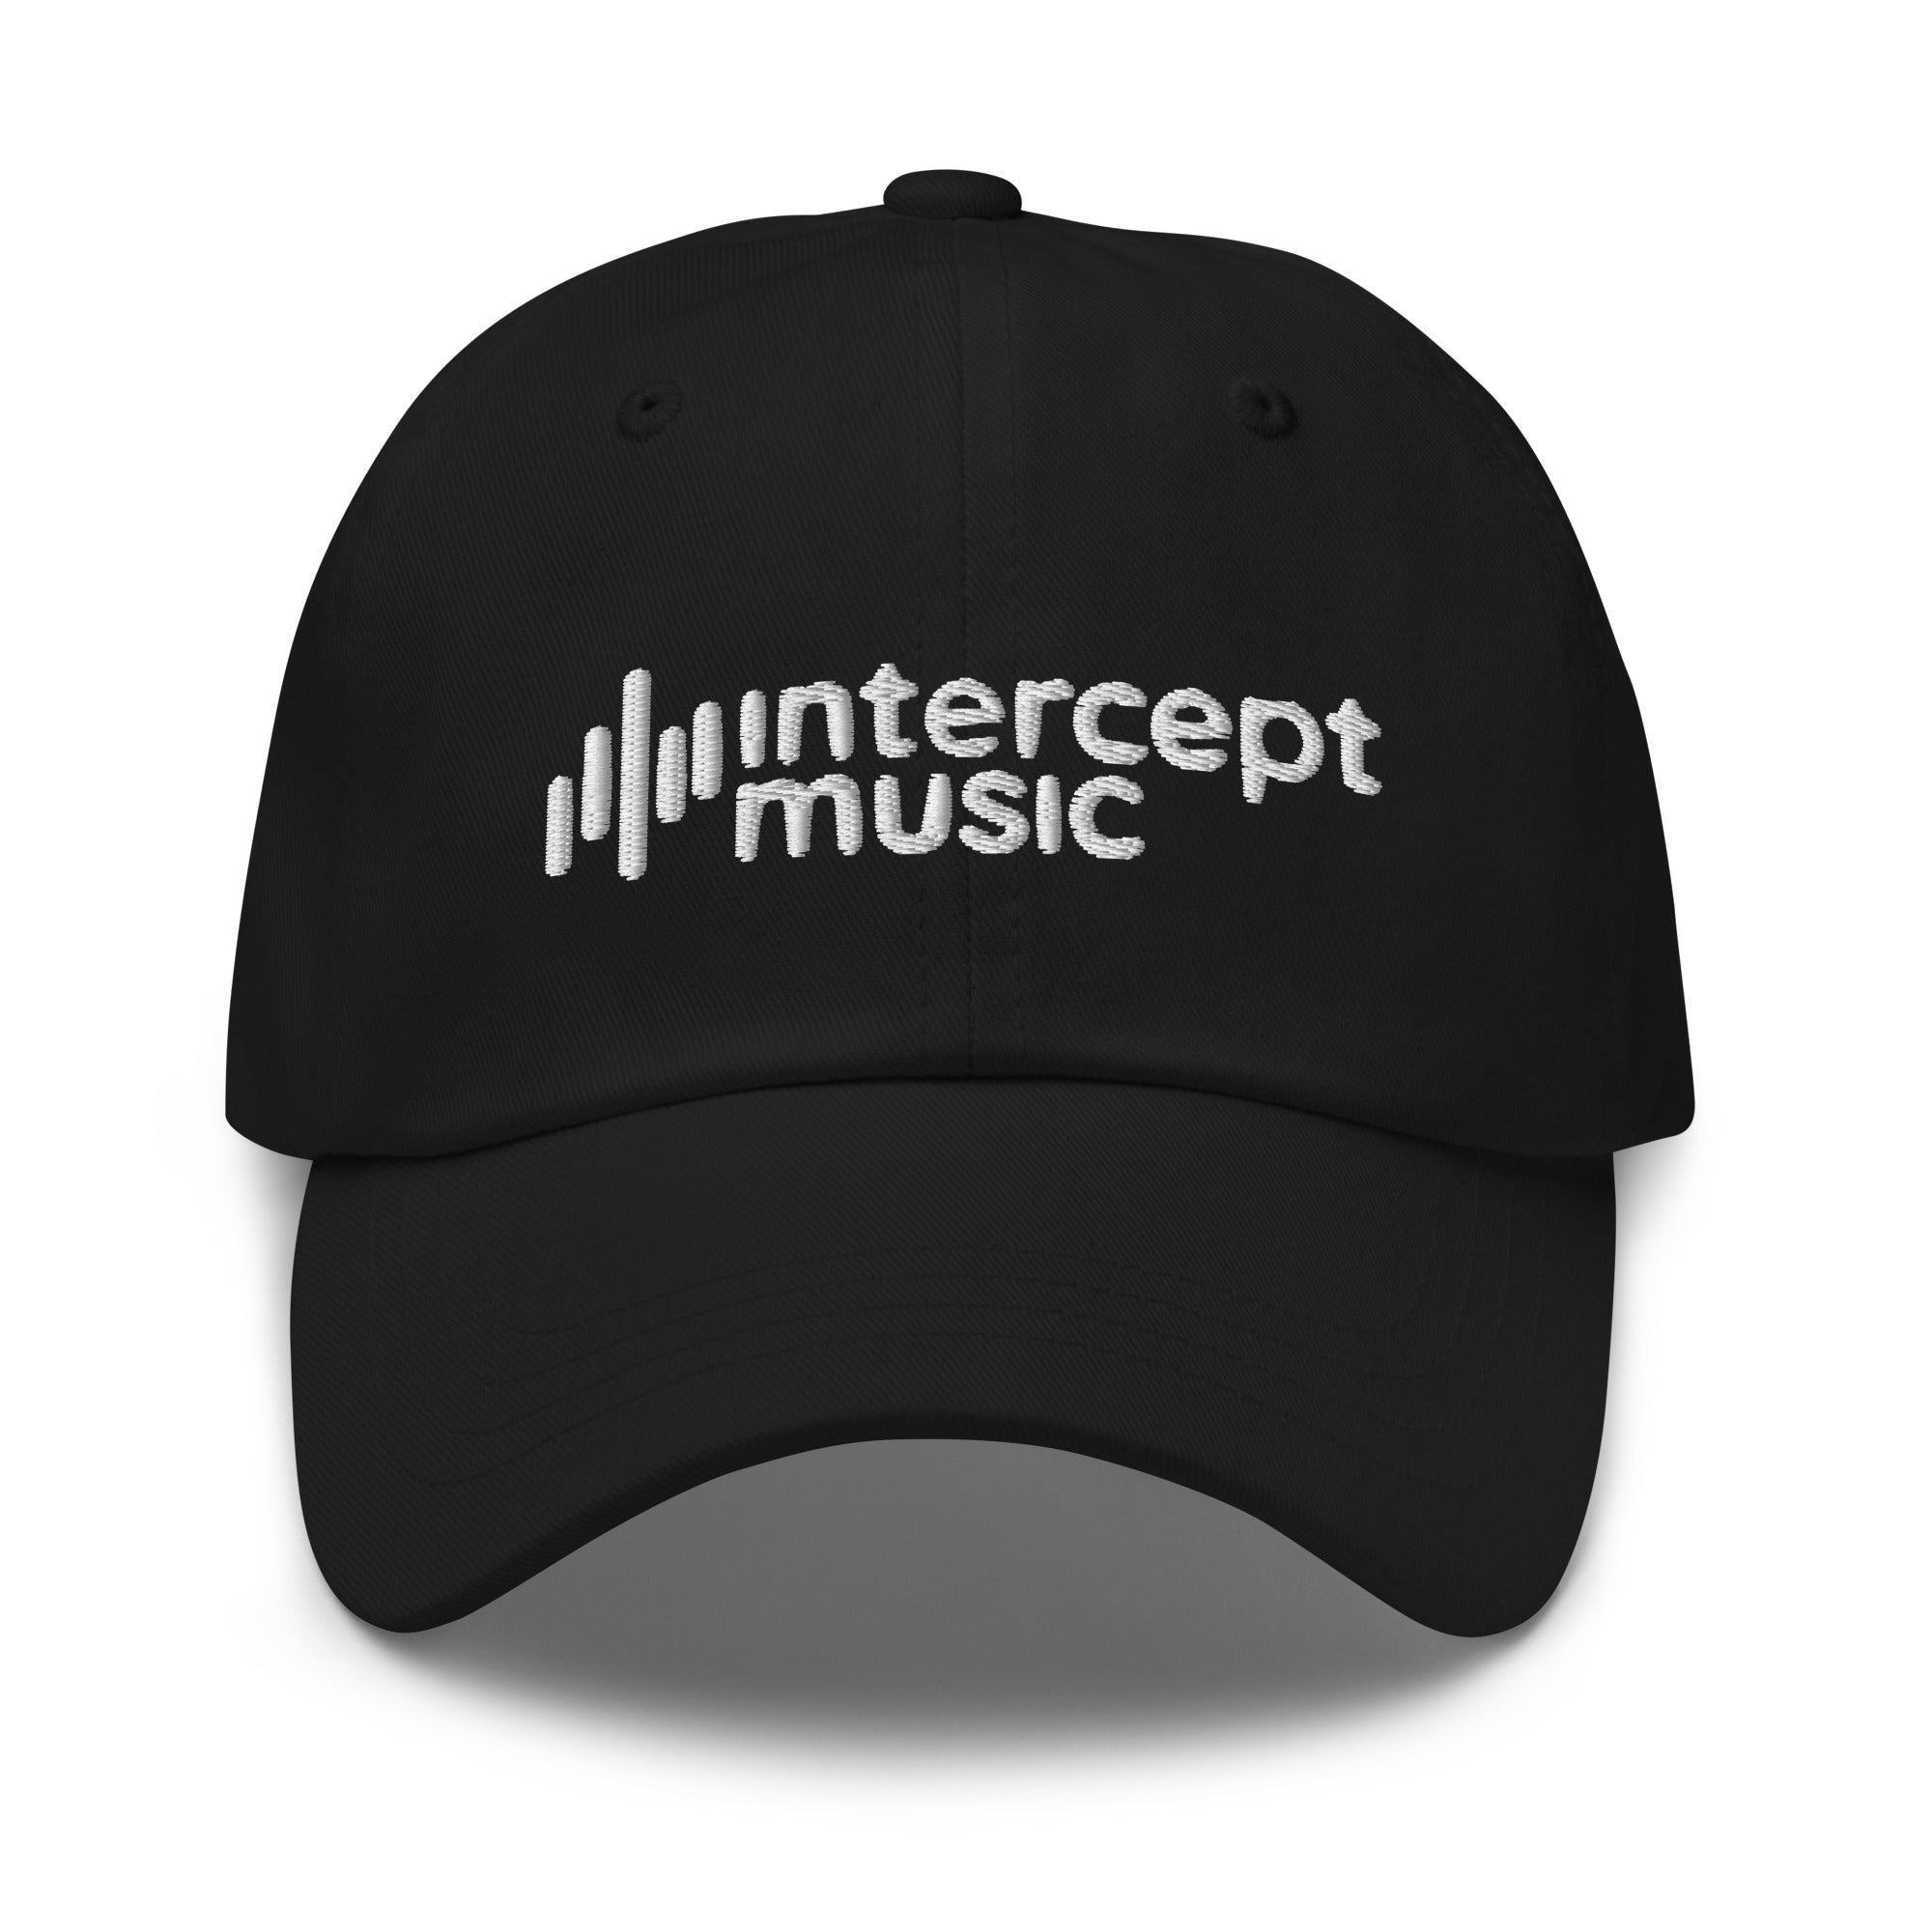 Intercept Music - Dad hat